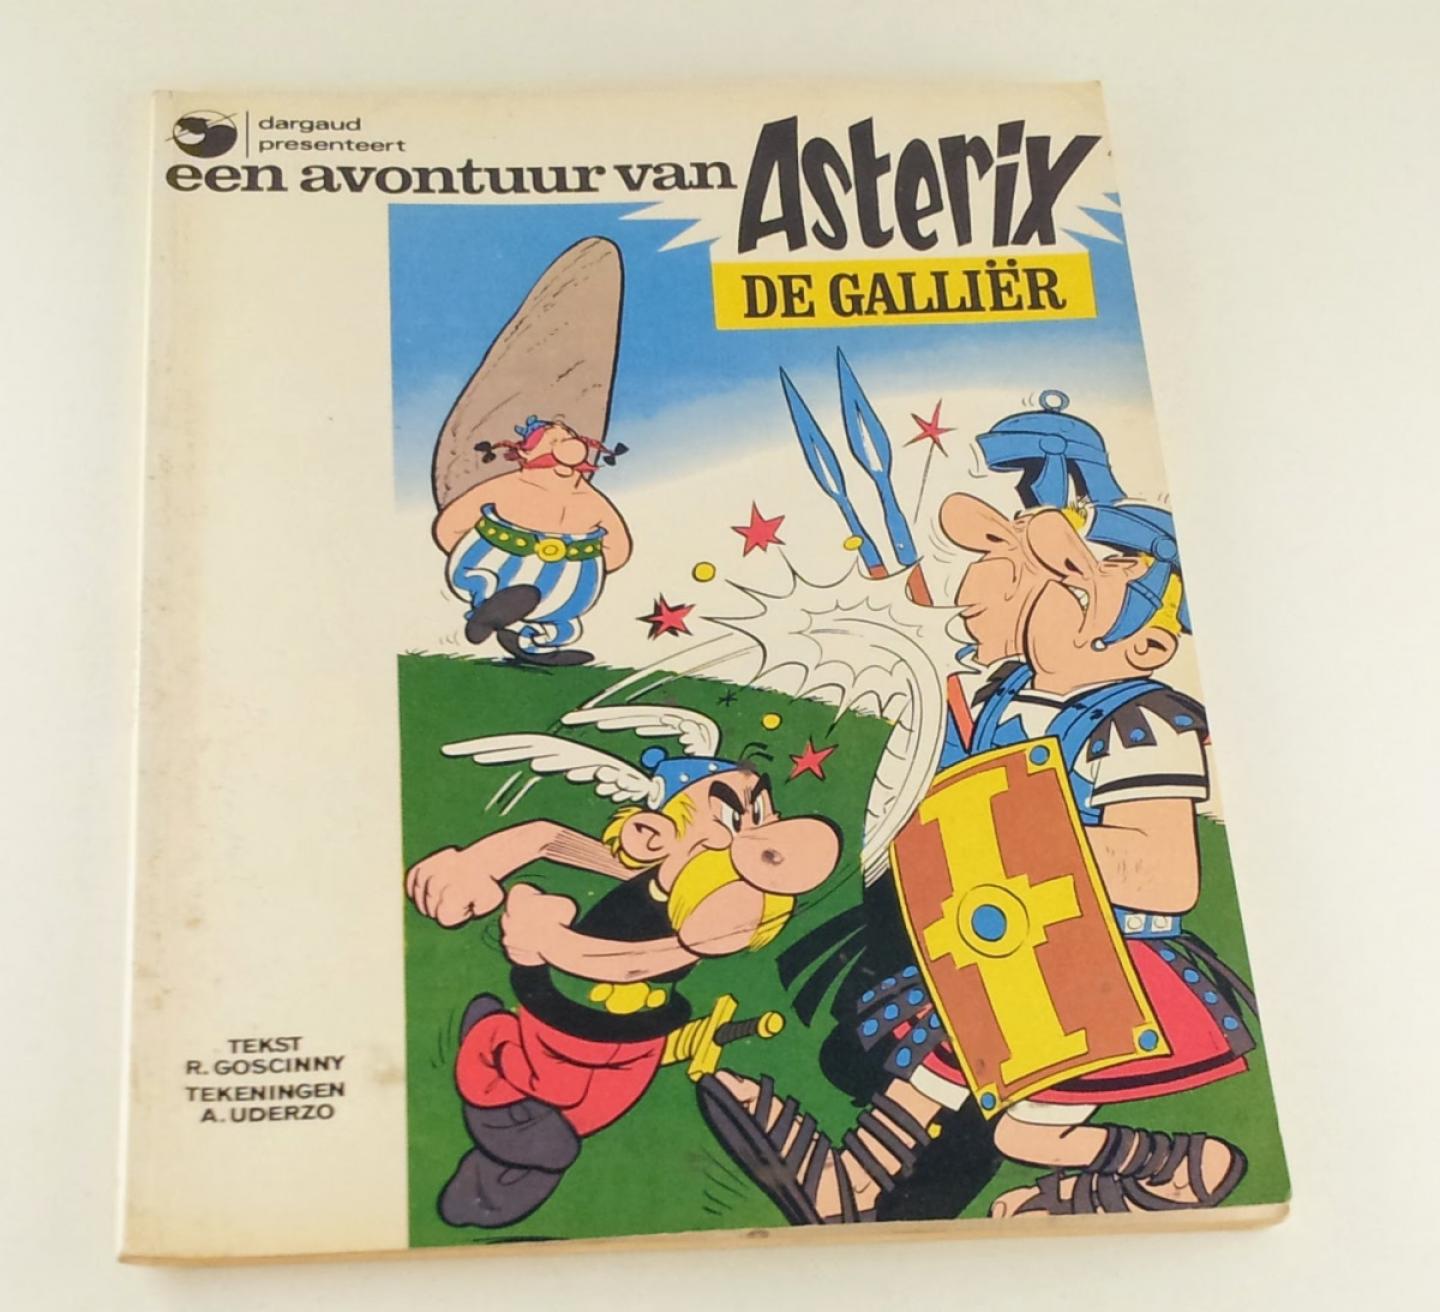 Goscinny, Rene / Uderzo, Albert - Asterix de Galliër / Een avontuur van Asterix